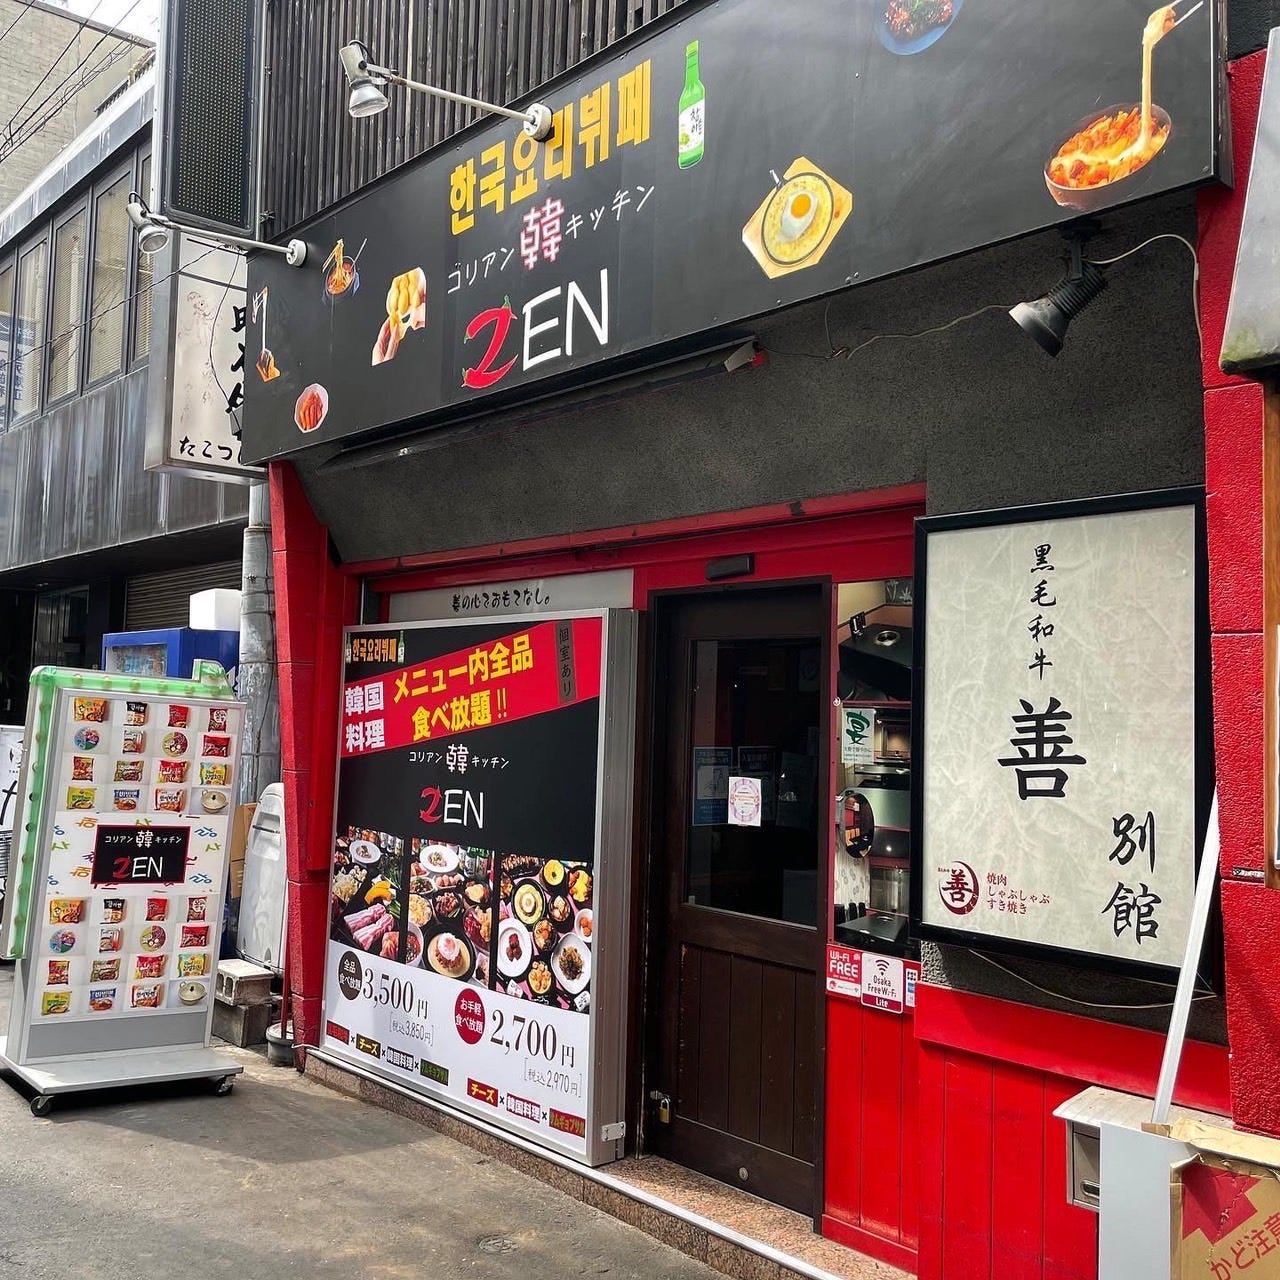 赤と黒が目立つ「韓国料理 食べ放題専門店 コリアン韓キッチン ゼン」の外観